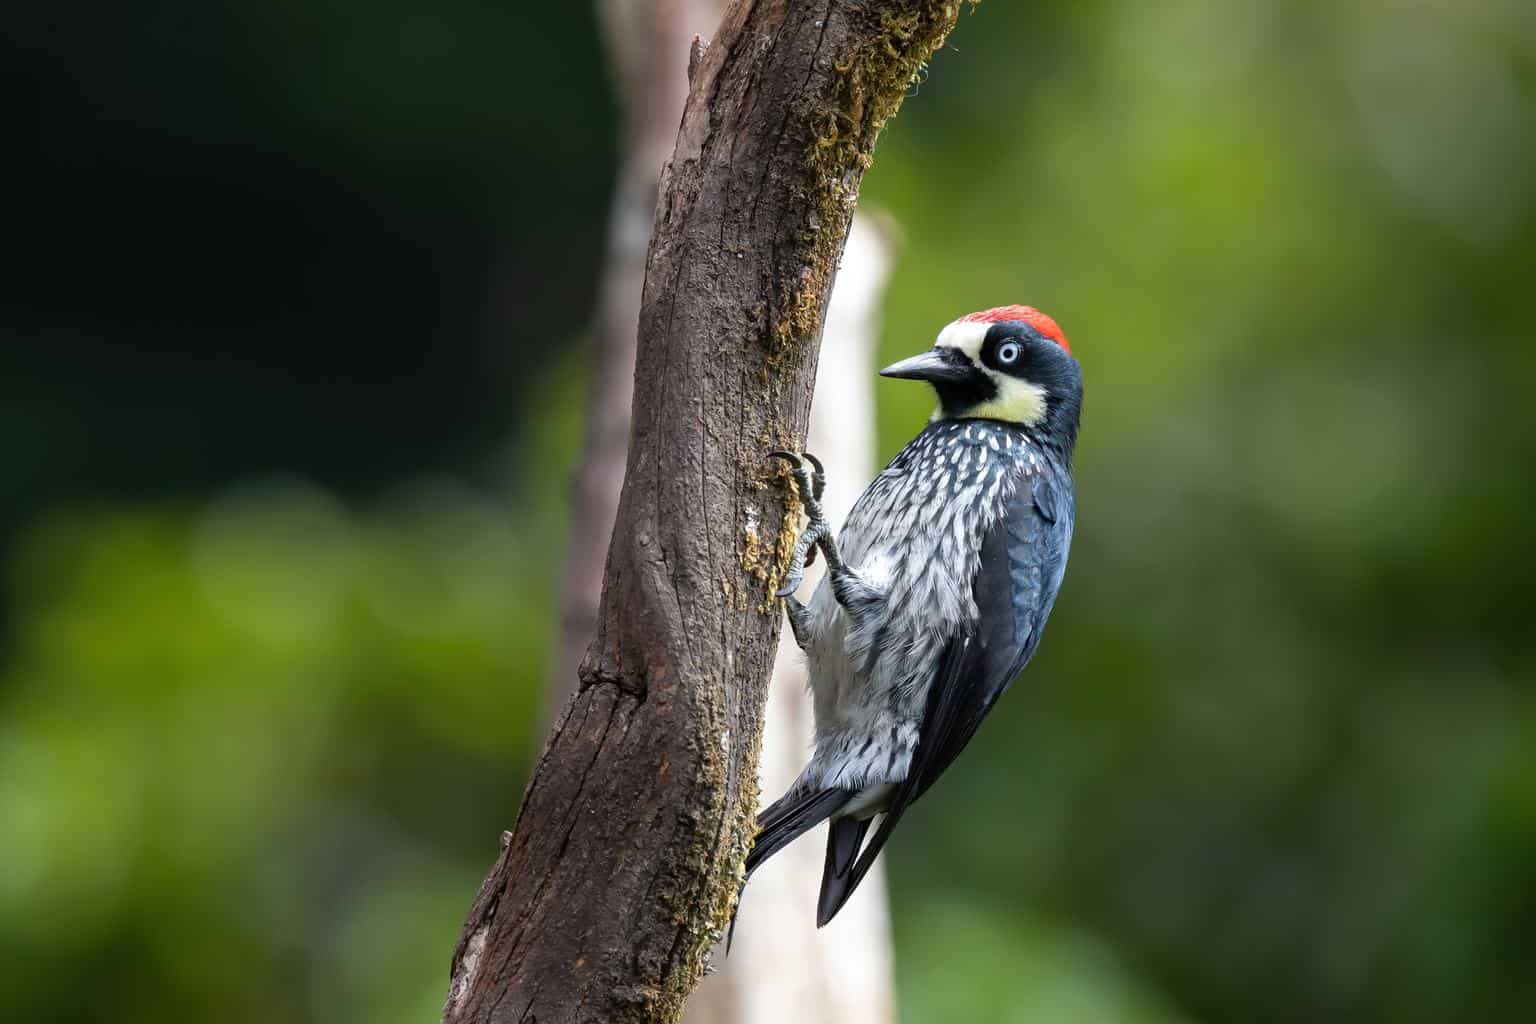 Pájaros carpinteros en Arizona: 14 especies que hay que ver